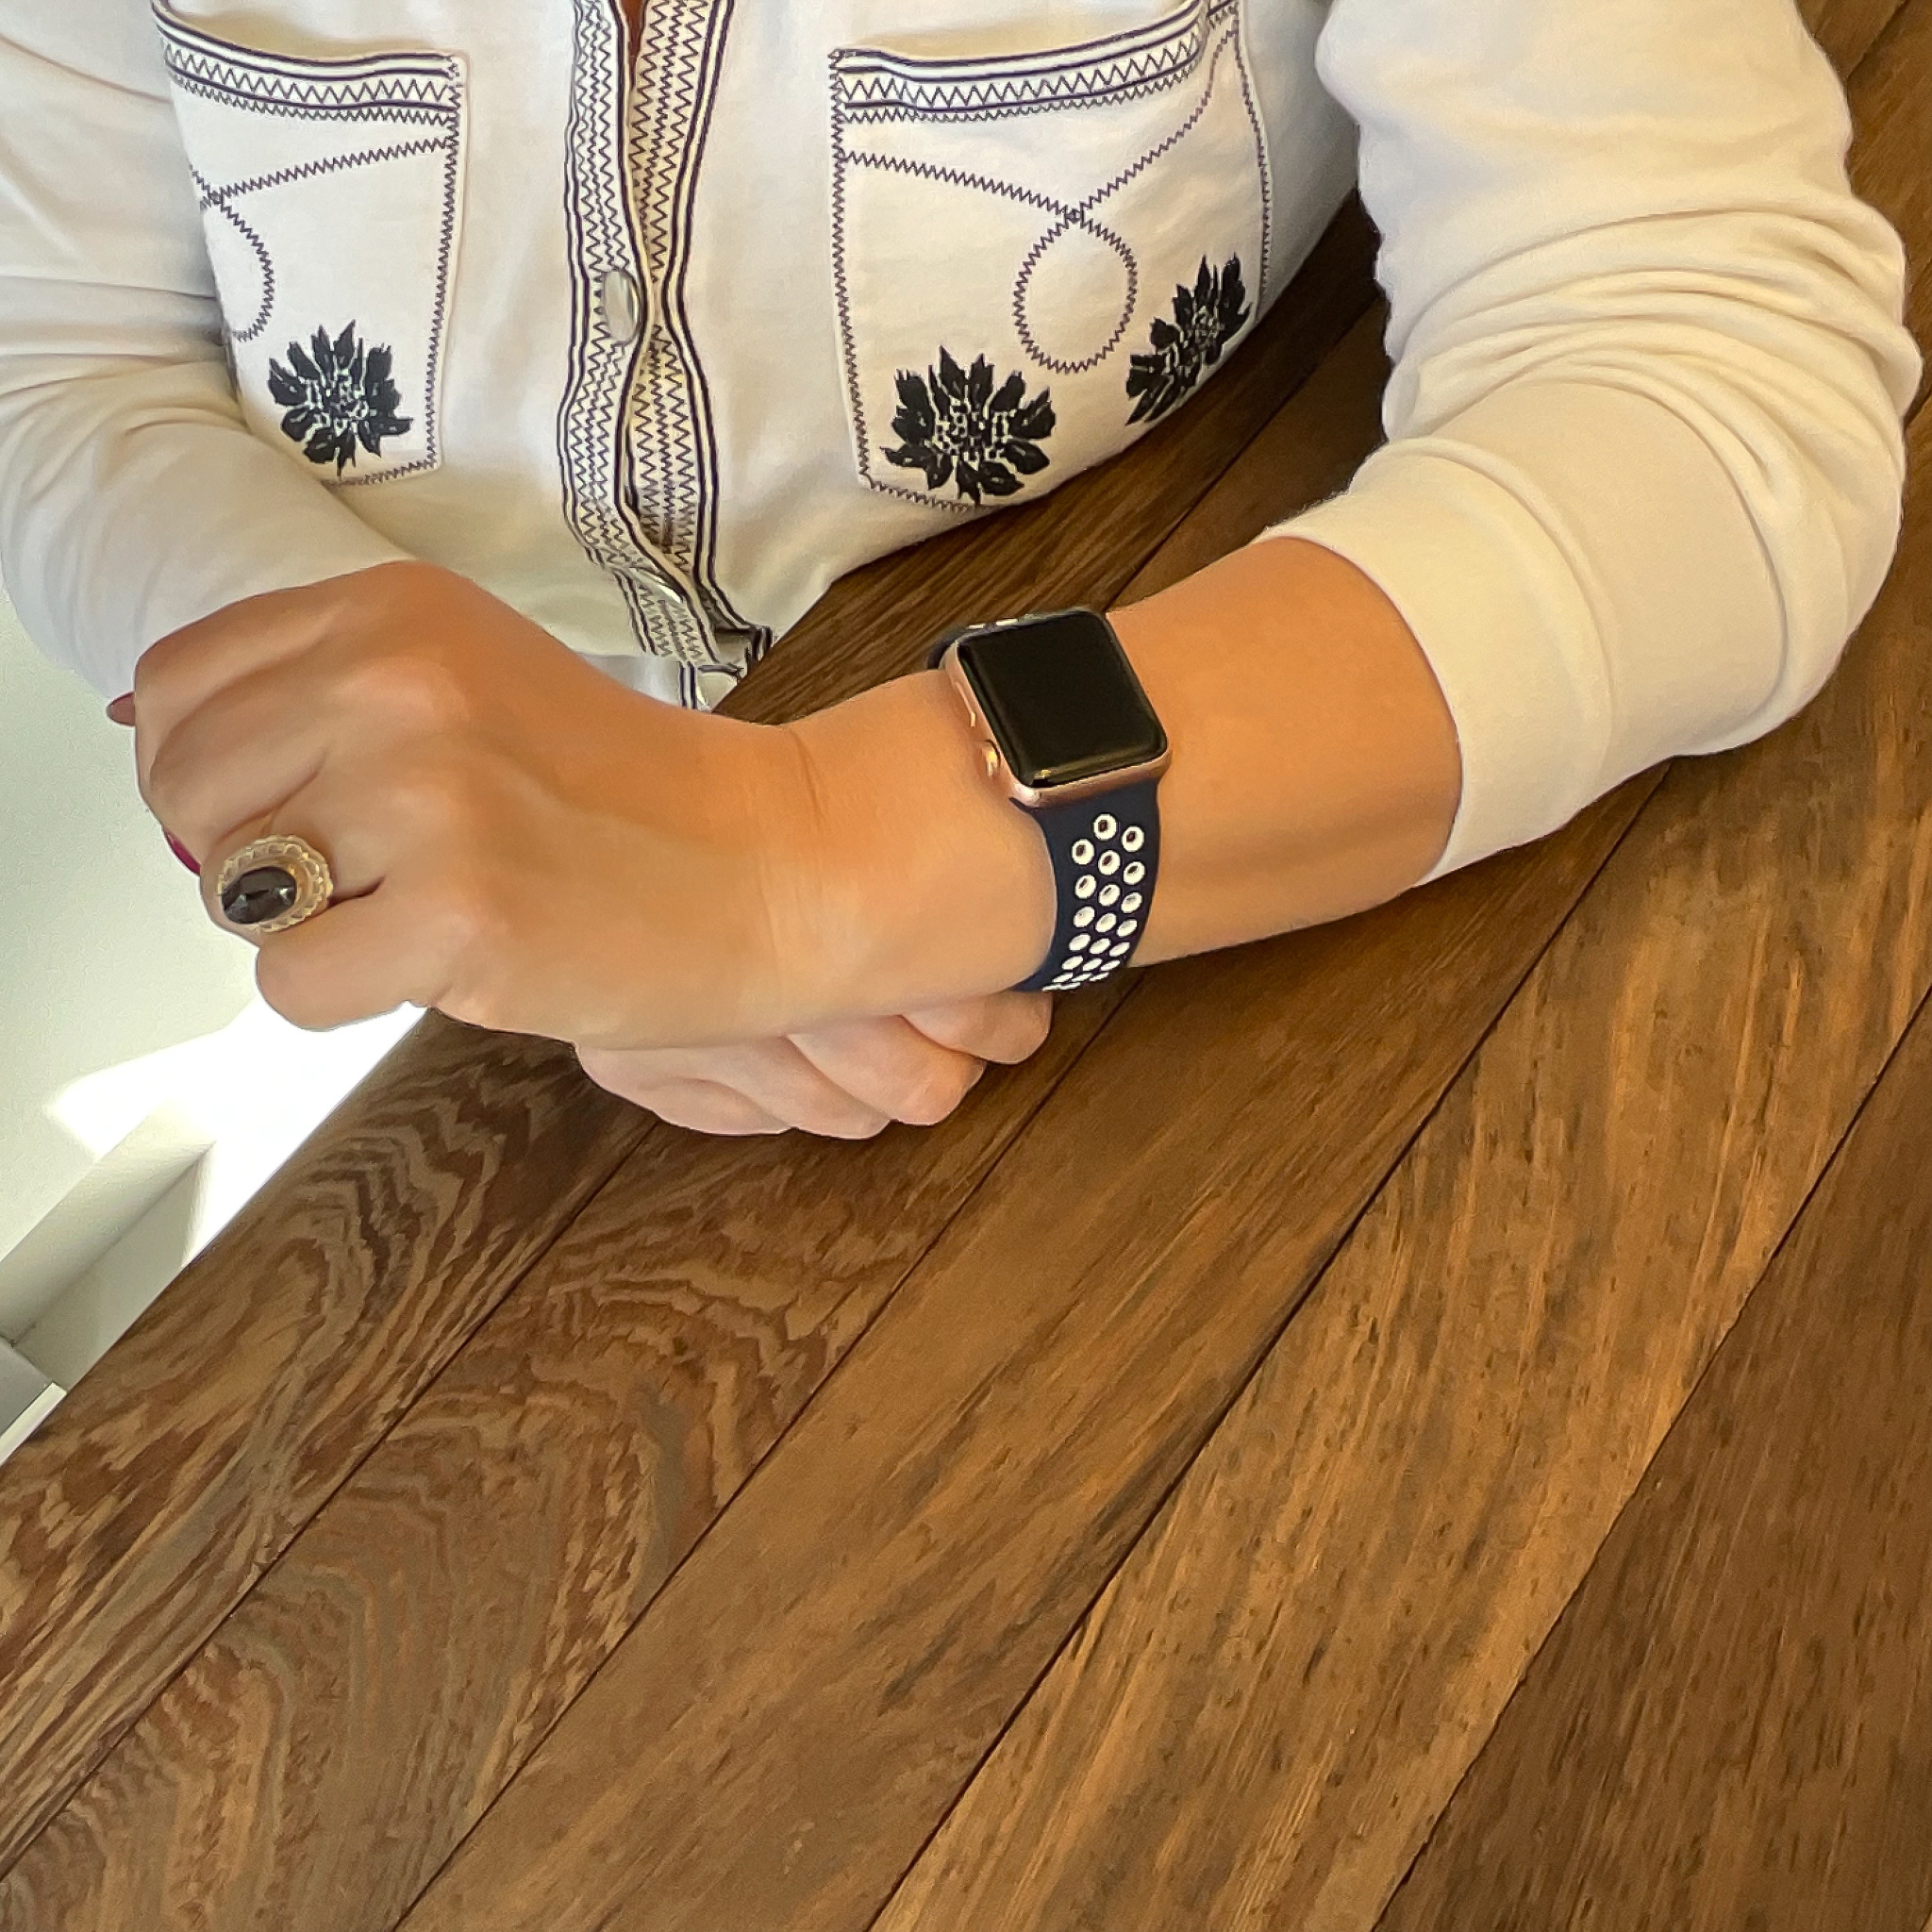 Apple Watch Doppel Sportarmband - blau und weiß